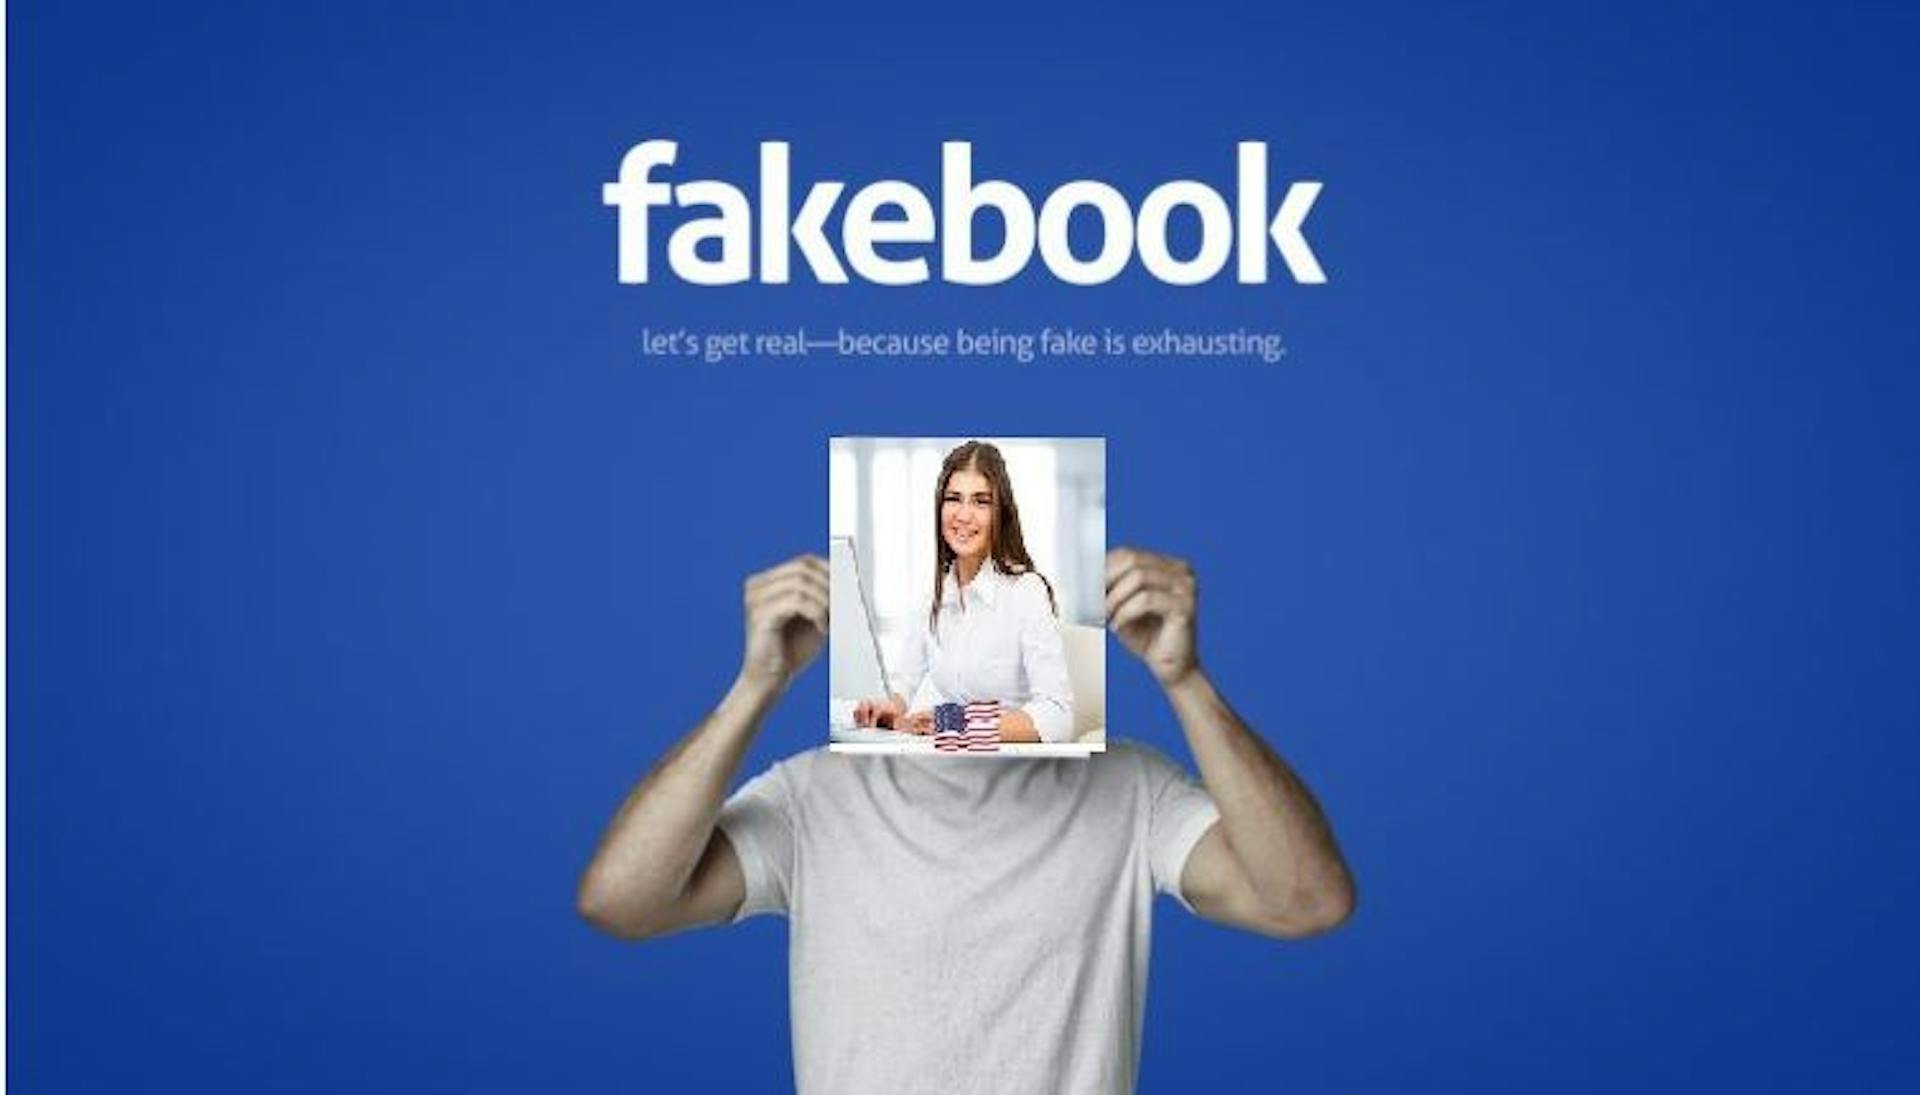 featured image - Lernen Sie Lucy Audrey kennen, das unehrliche Fake-Profil, das Facebook nicht sperren lässt